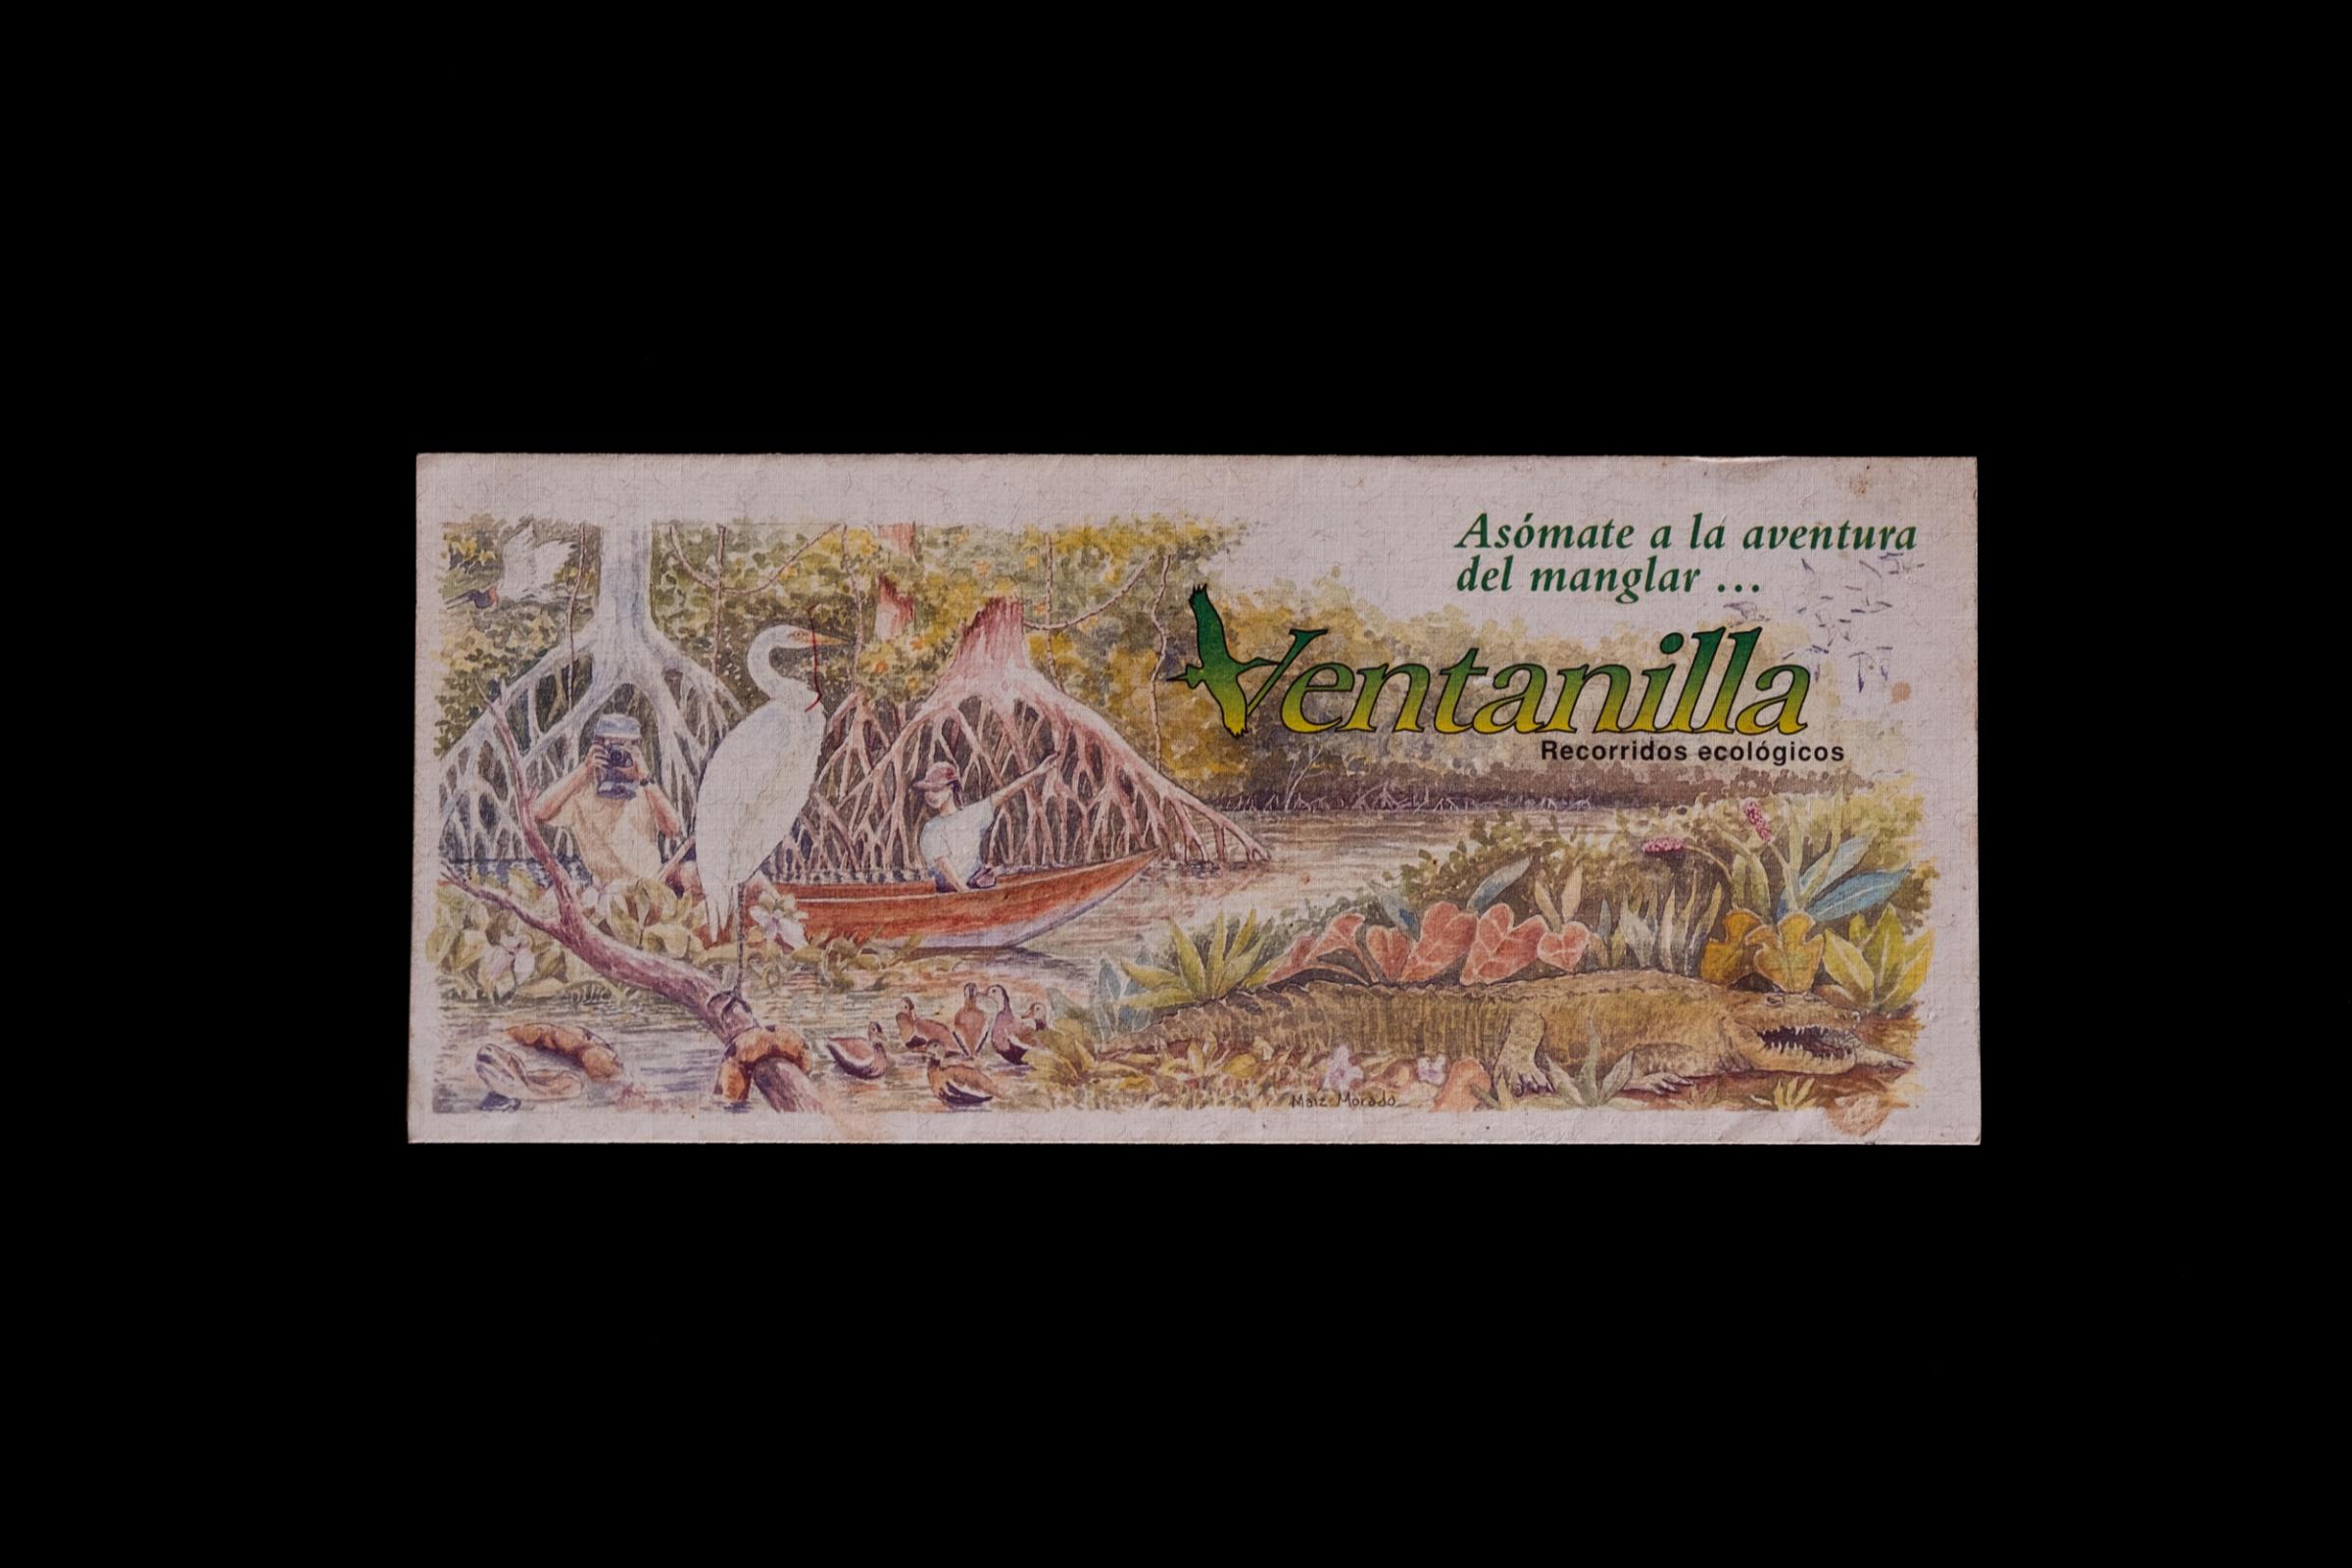 La Ventanilla: A window to coexisting with Crocodiles 